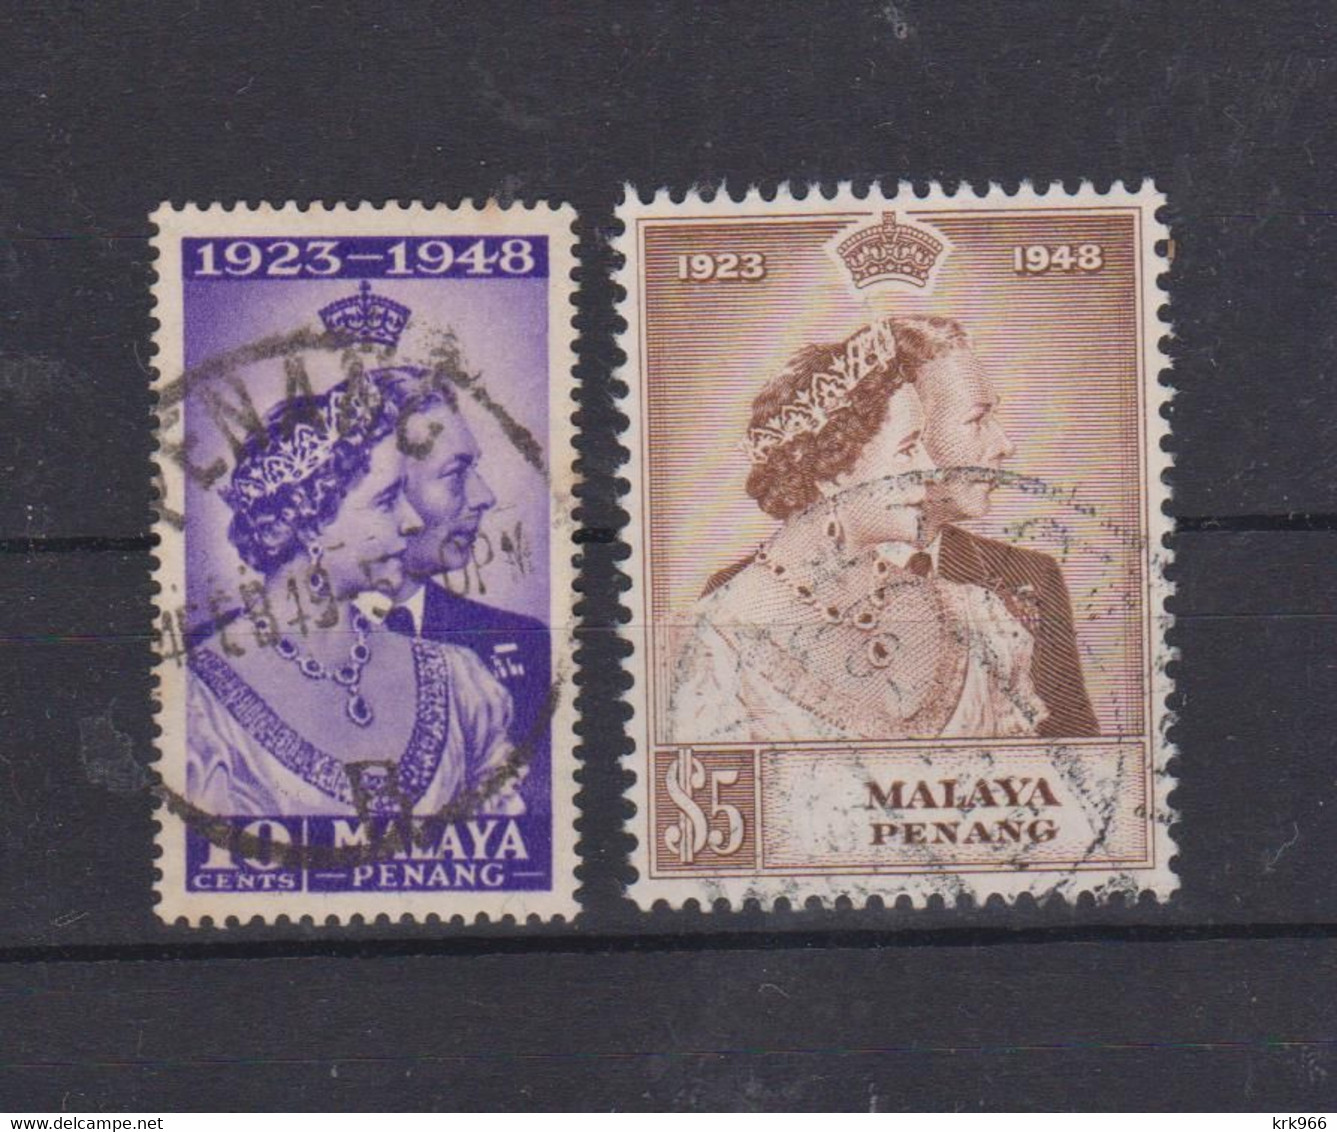 MALAYSIA PENANG 1948 Nice Set Used - Penang